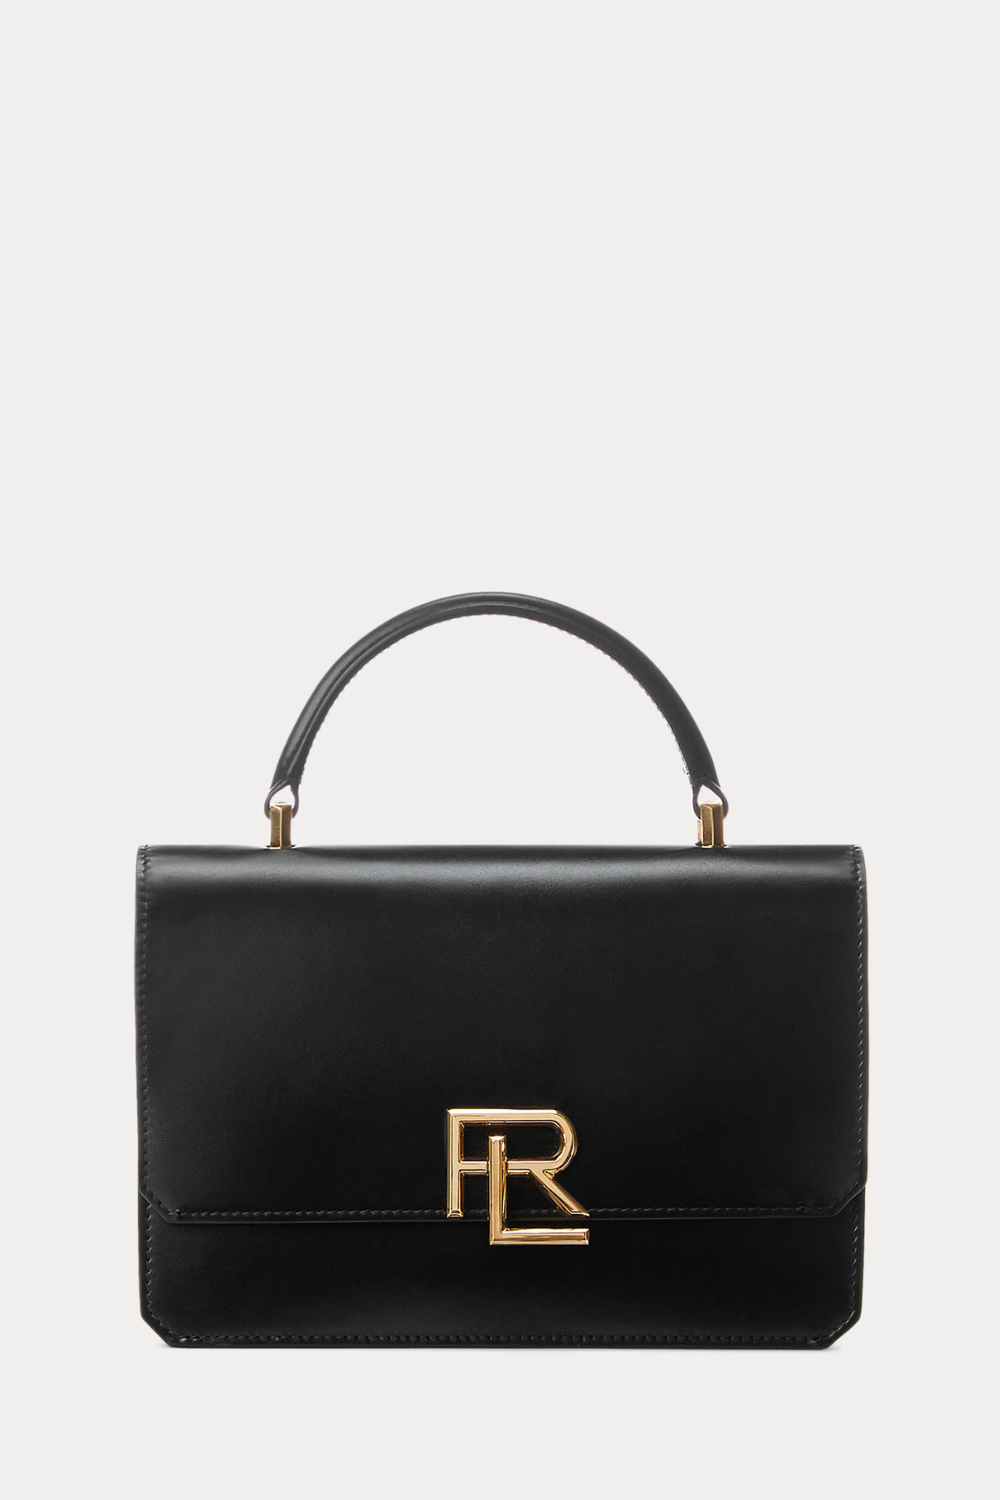 POLO Ralph Lauren Bear Denim Logo Tote A4 Bag Zip Pouch Set Foldable  Shopping | eBay